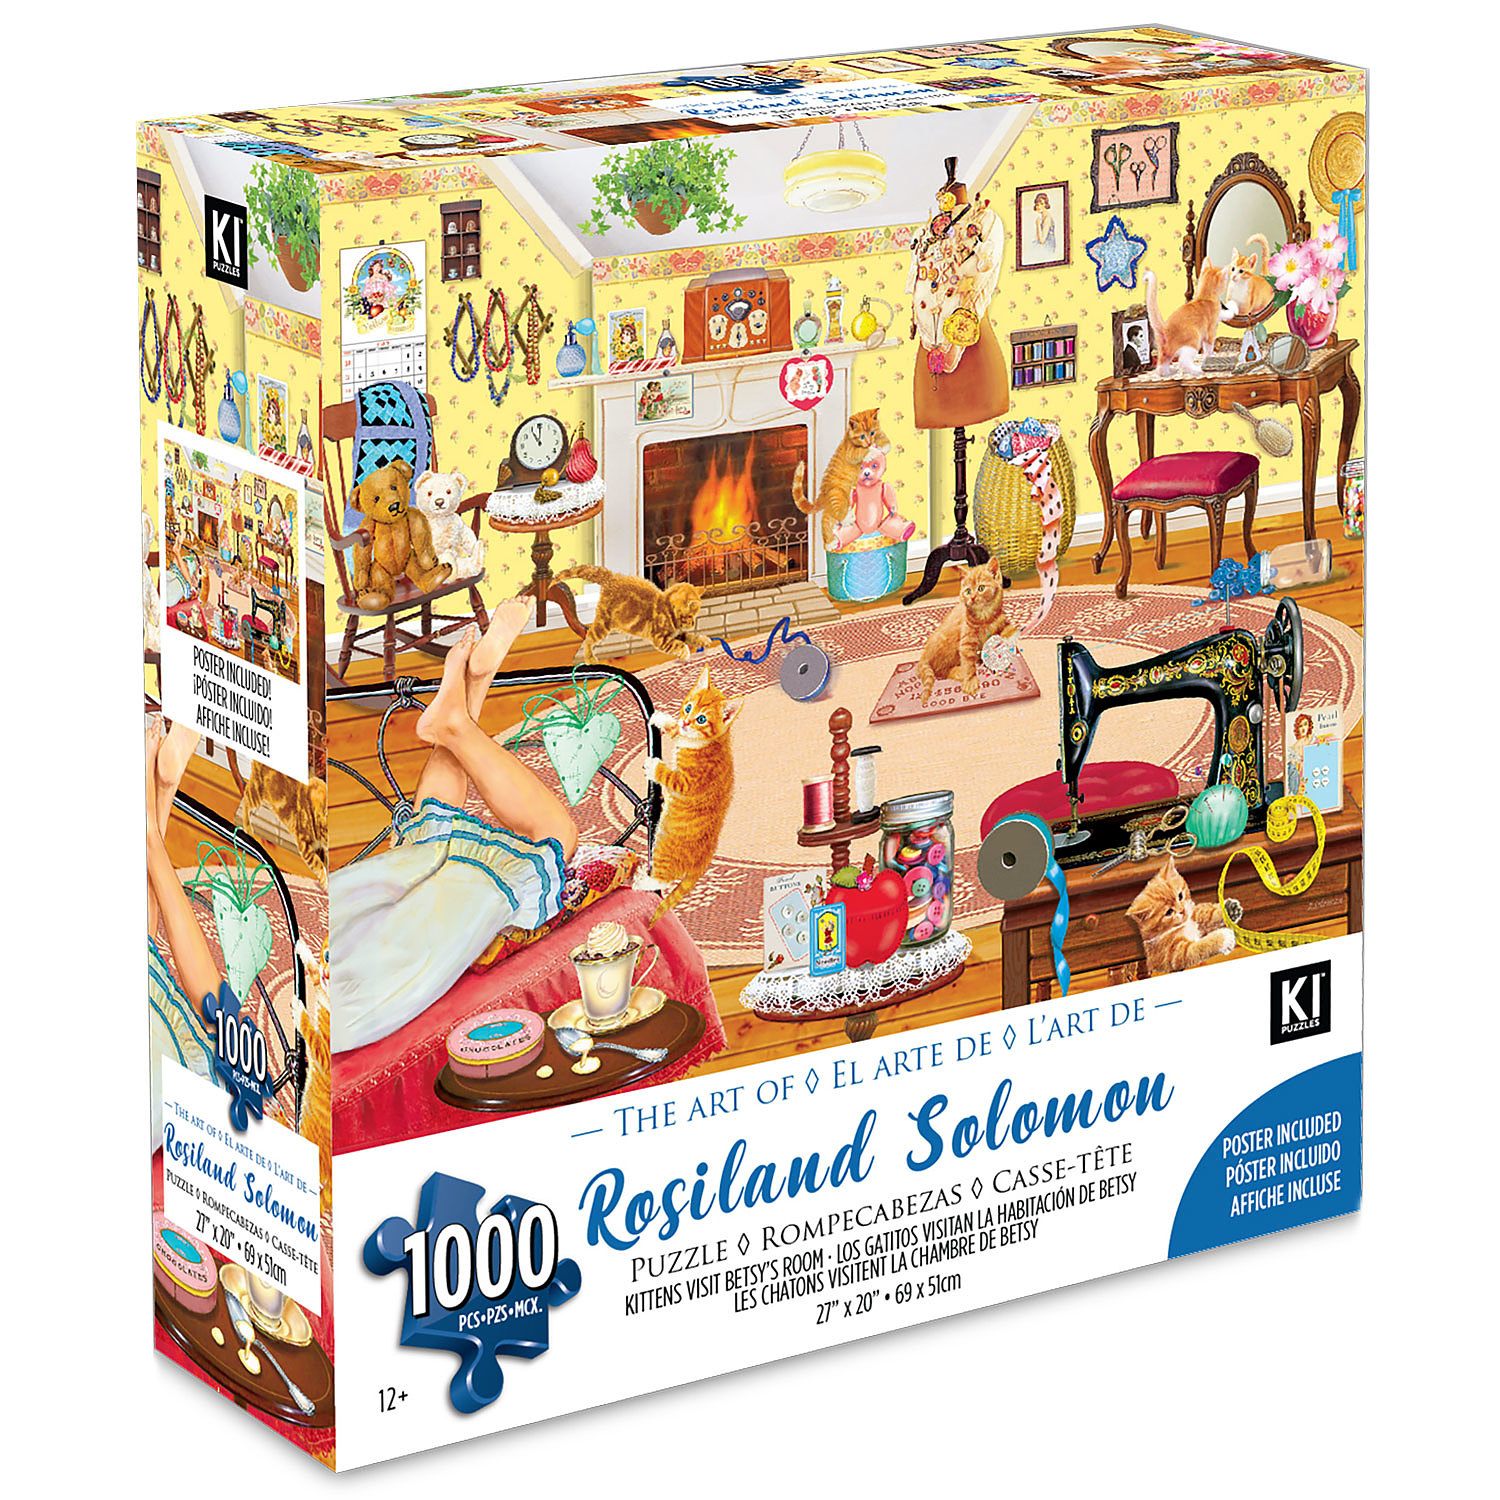 KI - Puzzle, Rosalind Solomon, Kitten's visit Betsy's room, 1000 pcs